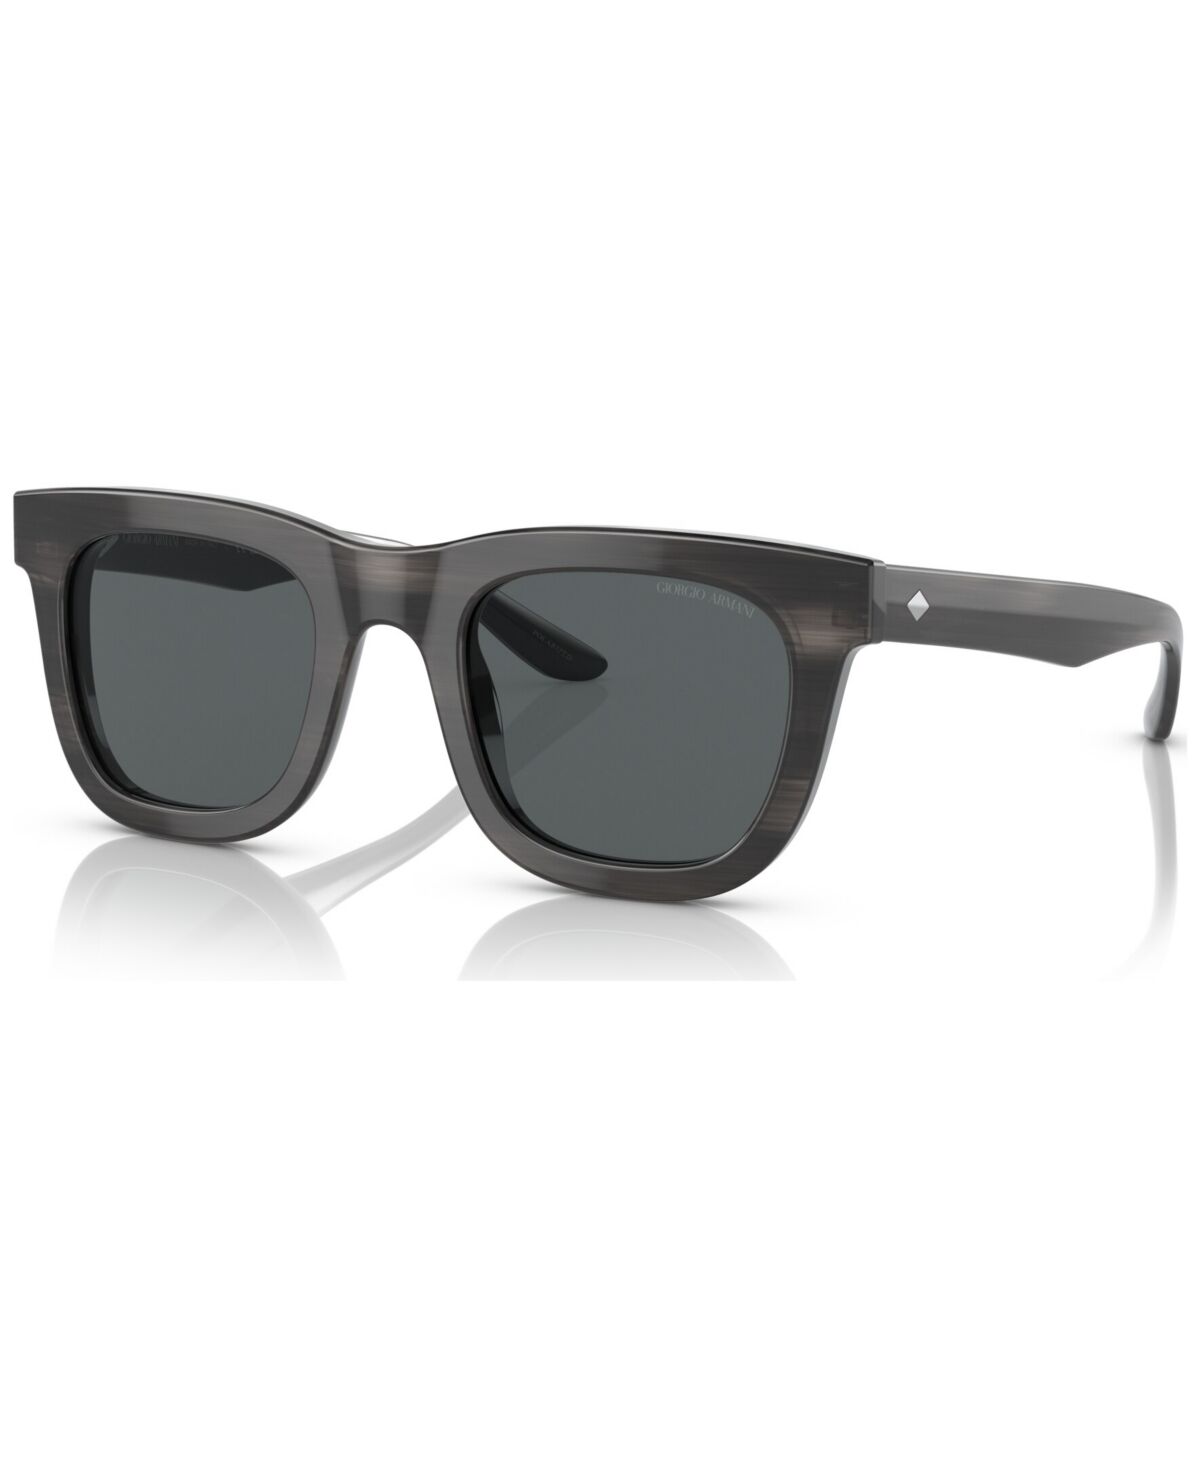 Giorgio Armani s Polarized Sunglasses, AR817149-p - Striped Gray